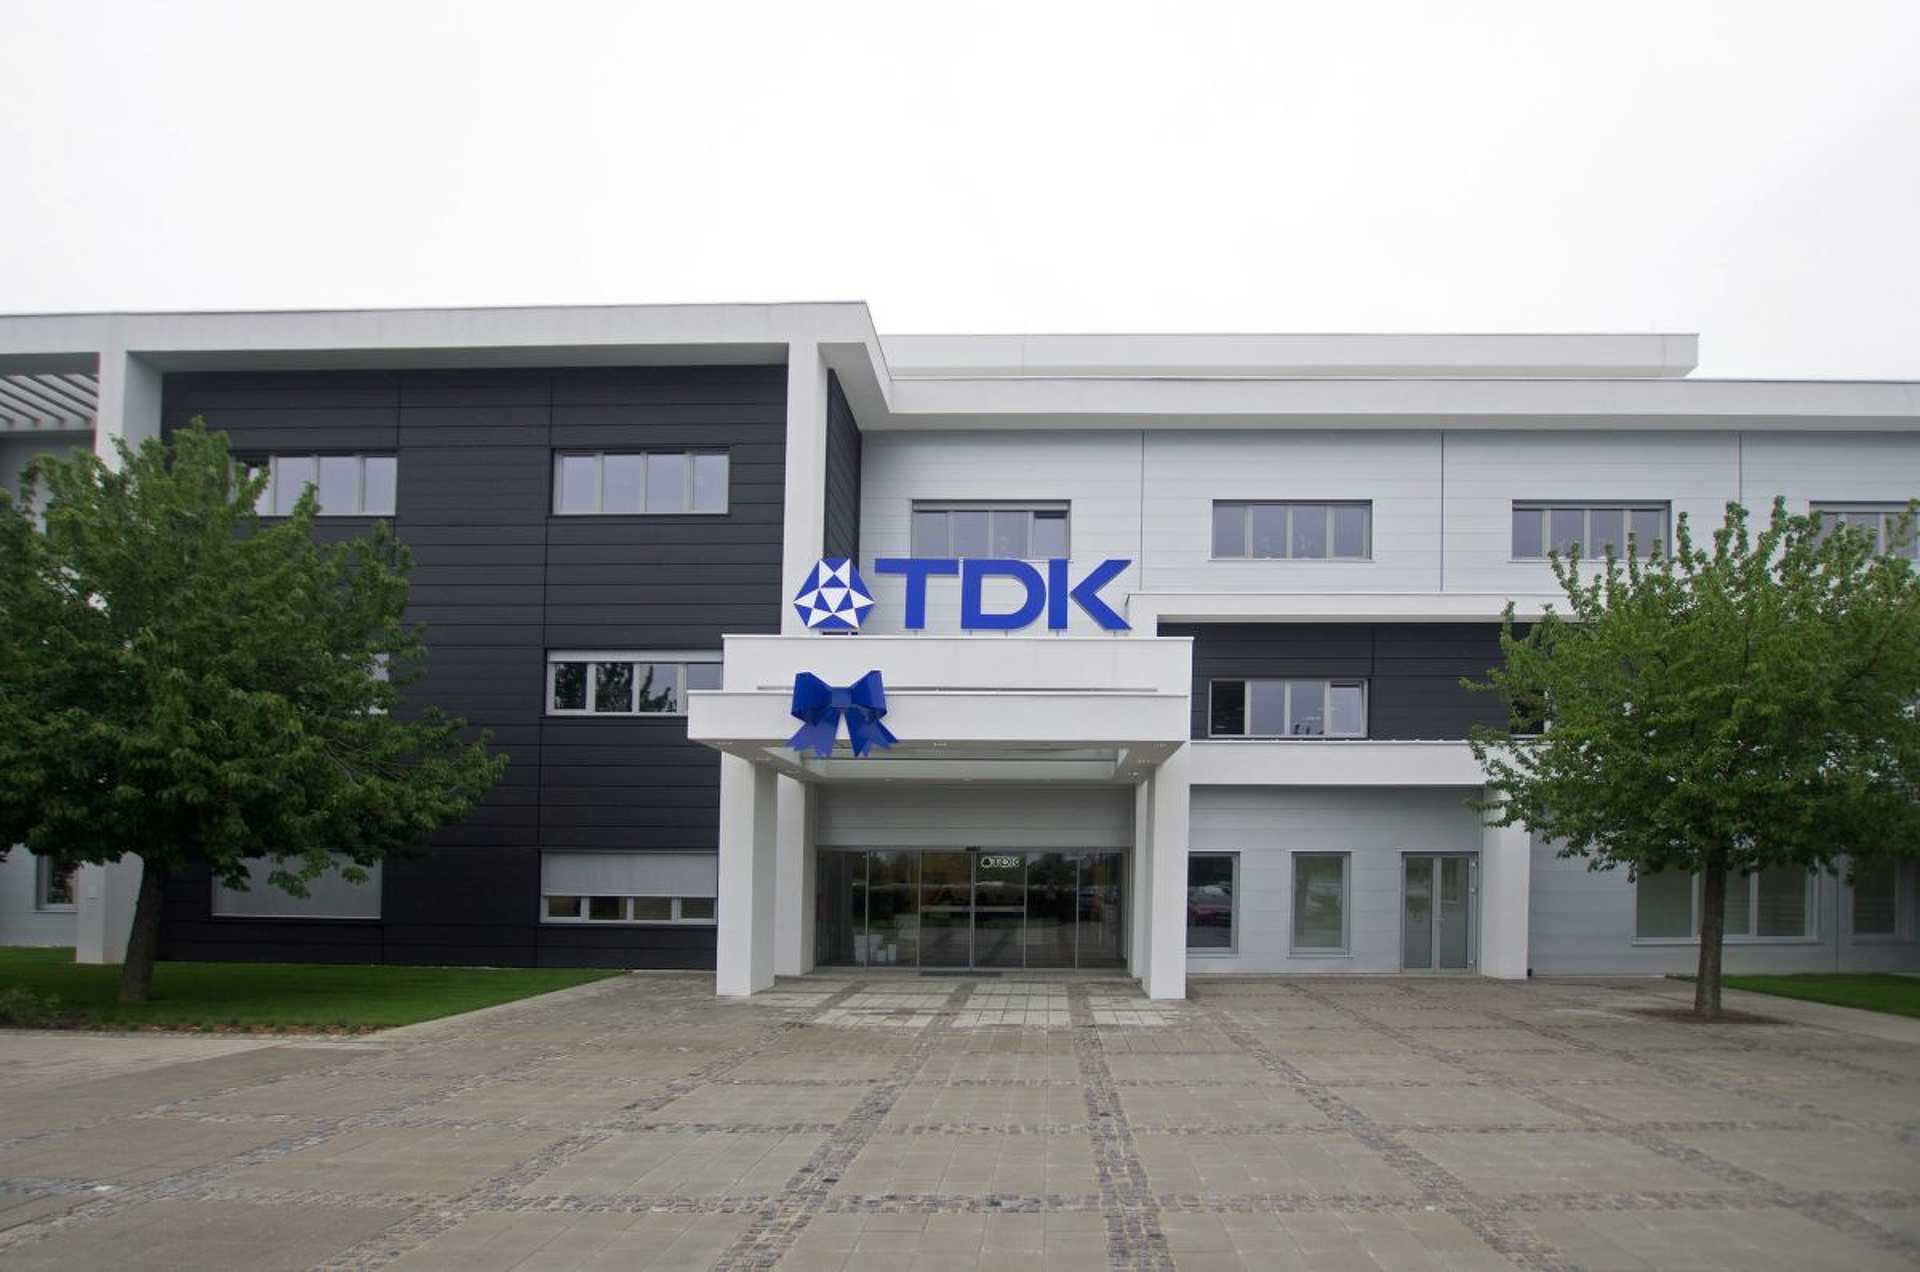 TDK - Sensoren aus Szombathely / TDK - Sensors from Szombathely